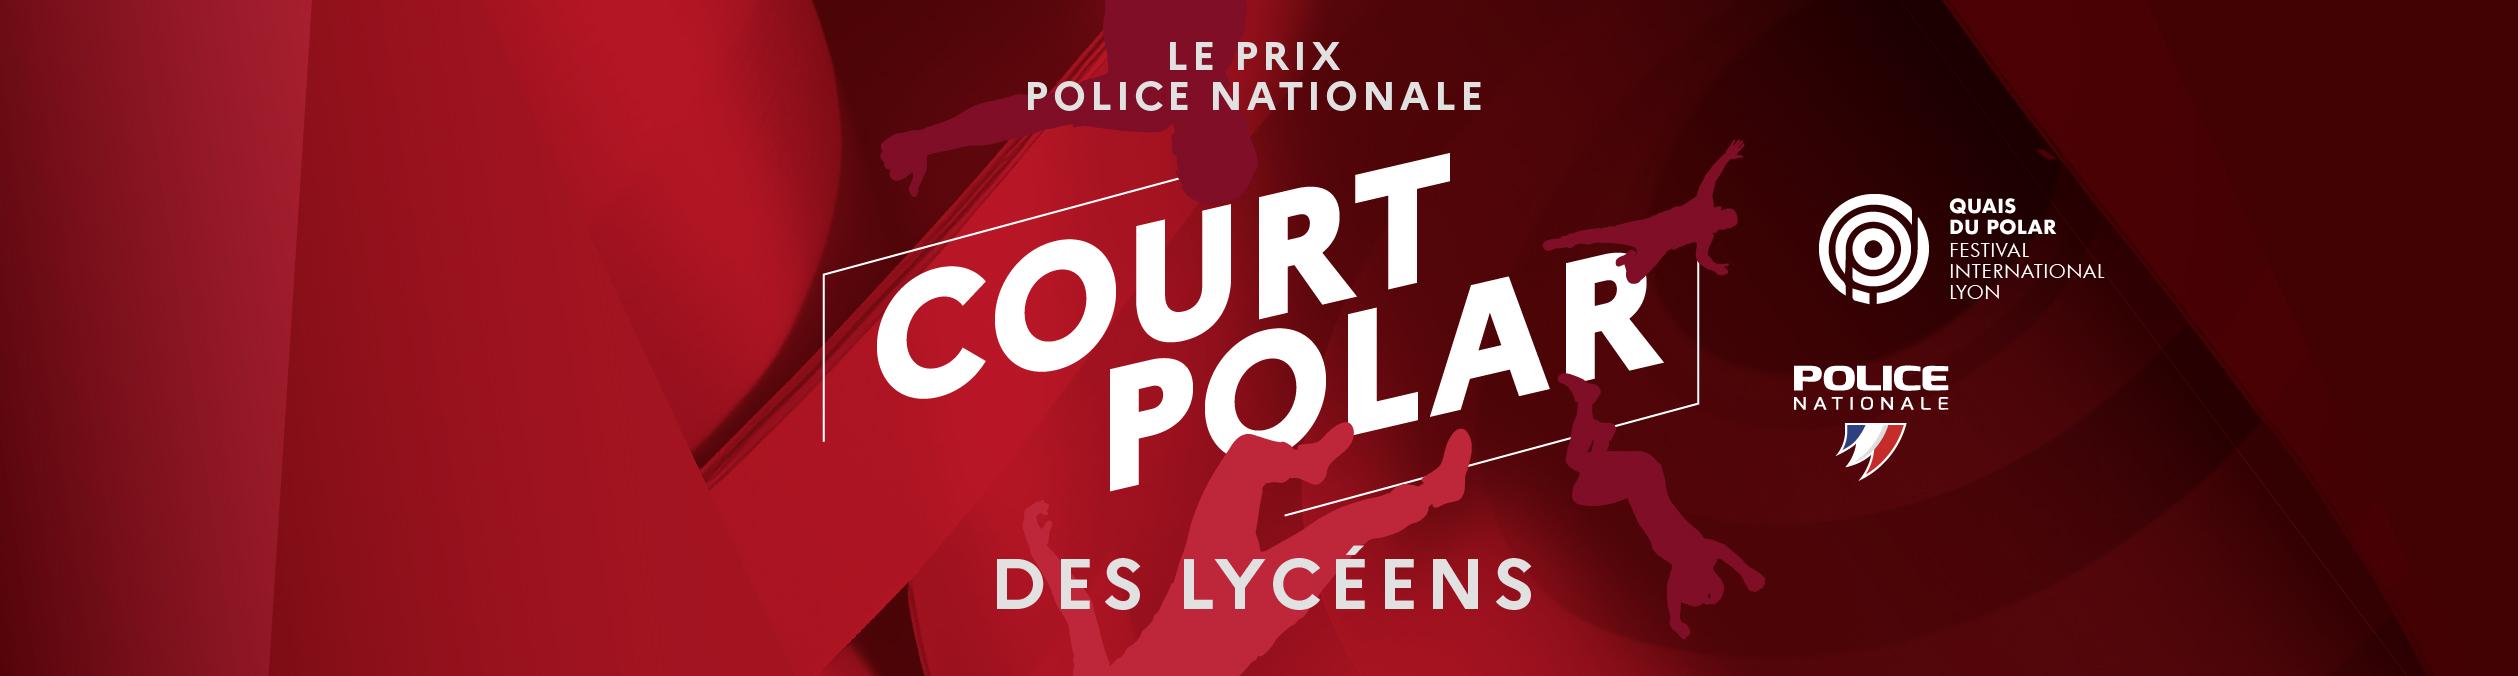 Le prix police nationale court polar des lycéens - Logo Quais du polar festival international  Lyon - Logo police nationale